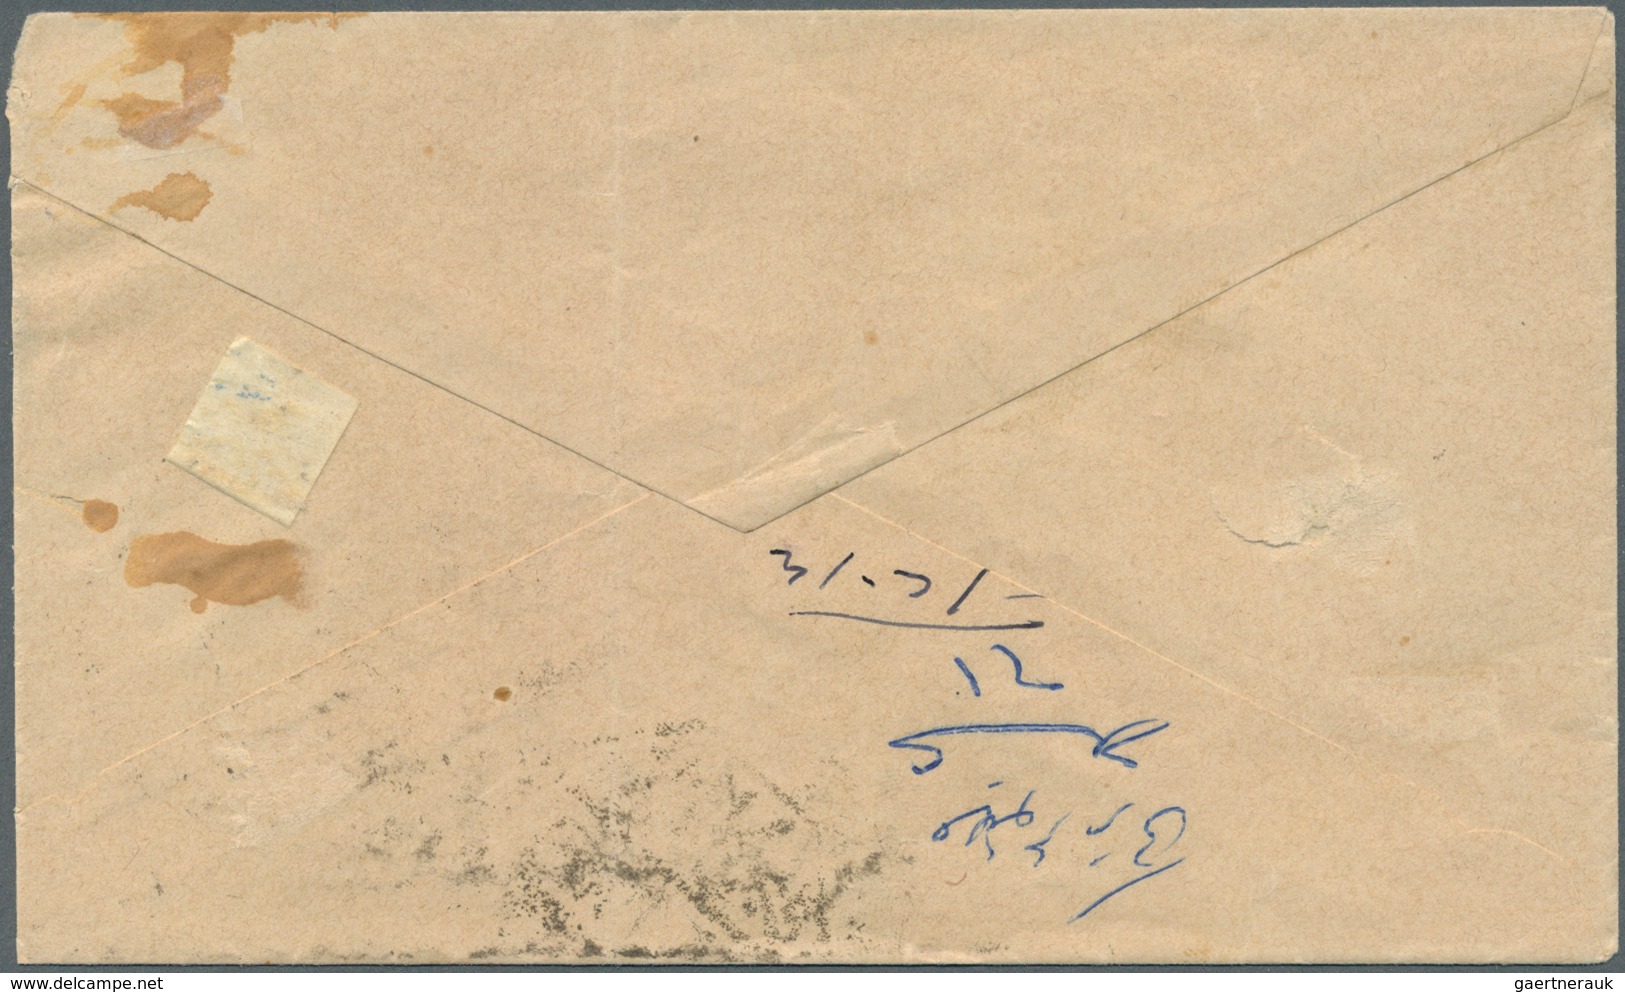 Saudi-Arabien - Stempel: 1916, Stampless Cover Tied By "MEKKE EL MUKEREME - 26/2/17- 1335" Cds. (Uex - Saudi-Arabien